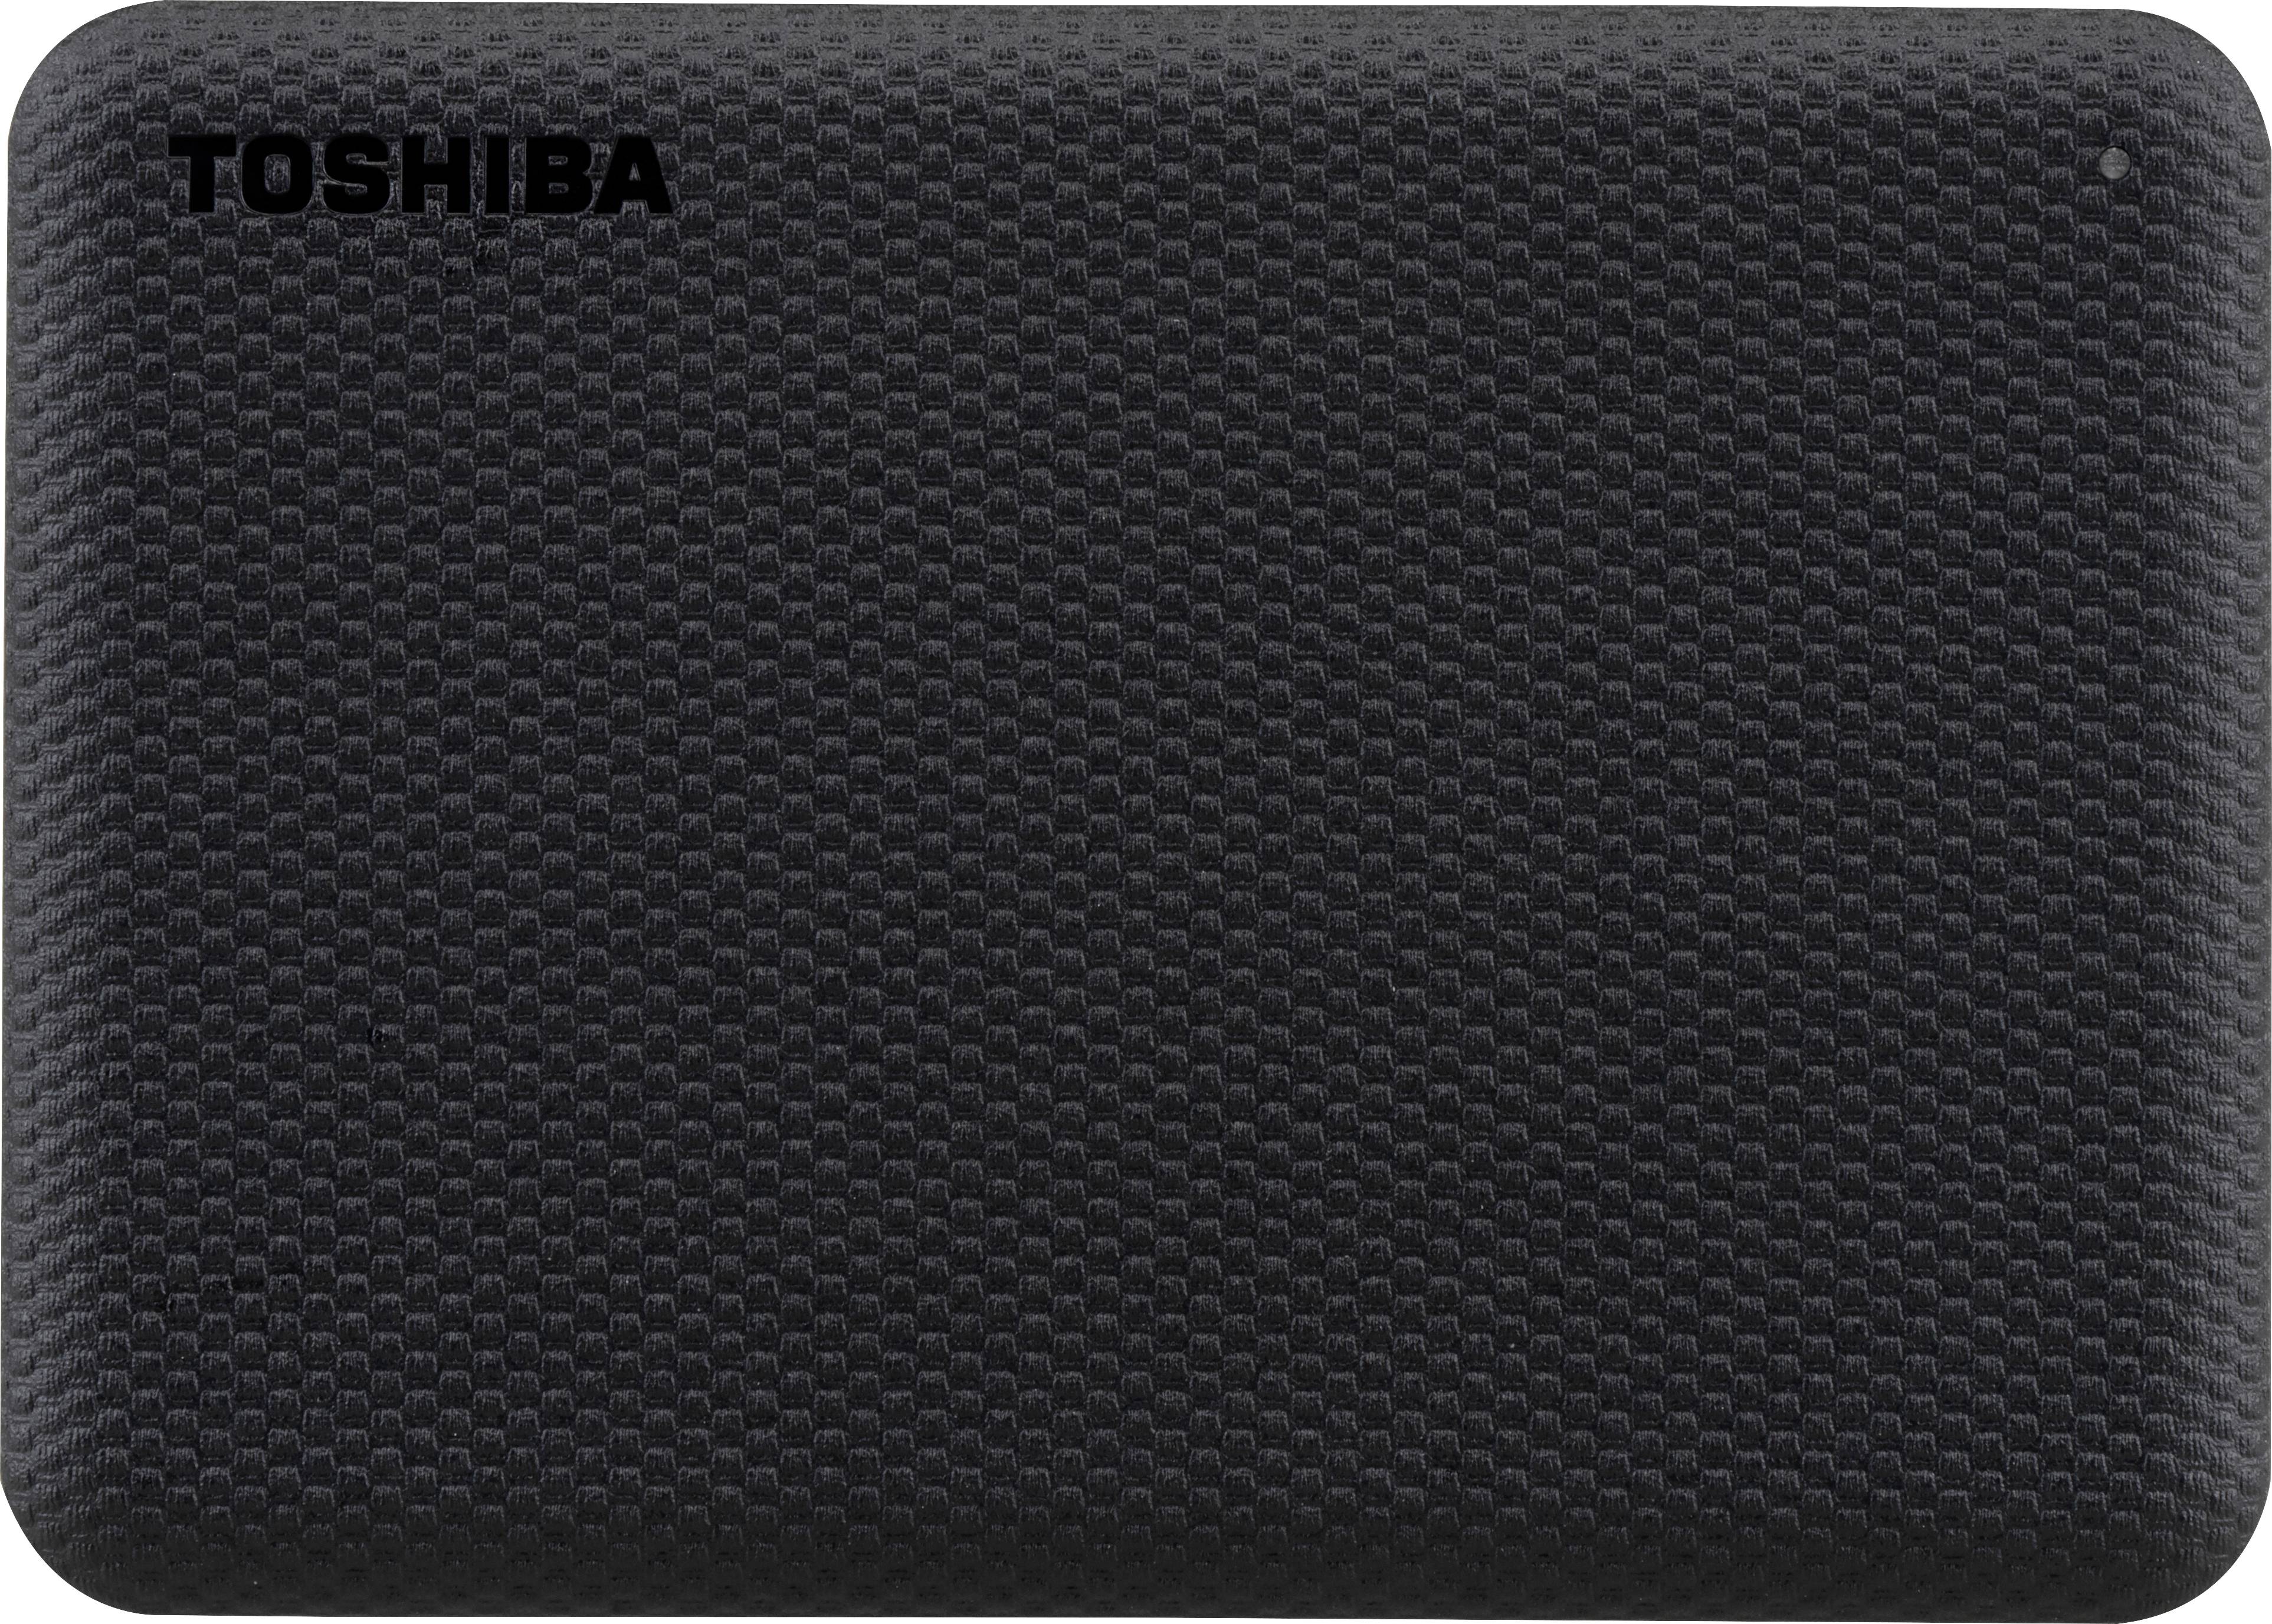 TOSHIBA Canvio Advance 1TB